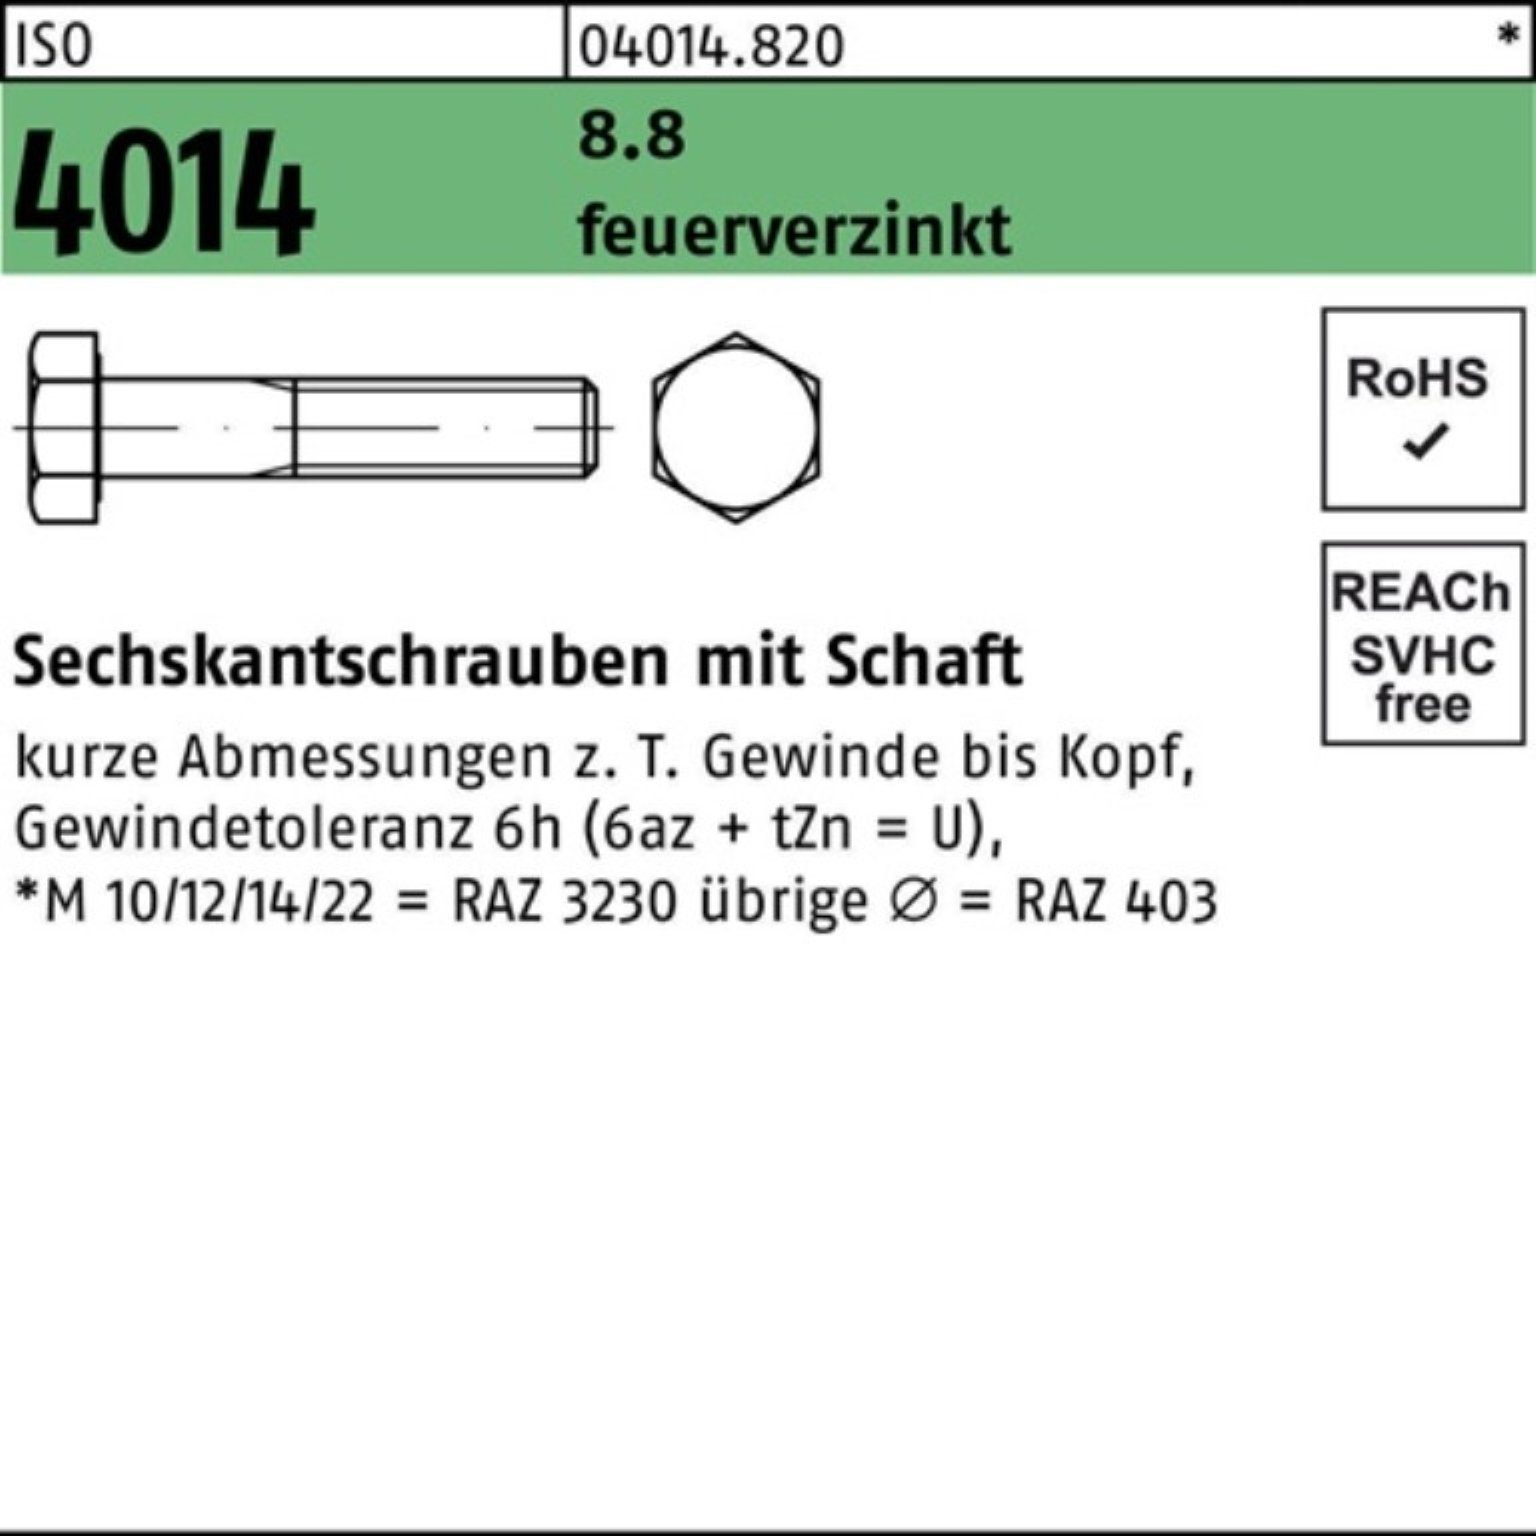 Bufab Sechskantschraube 100er Pack Sechskantschraube ISO 4014 Schaft M36x 160 8.8 feuerverz. 1